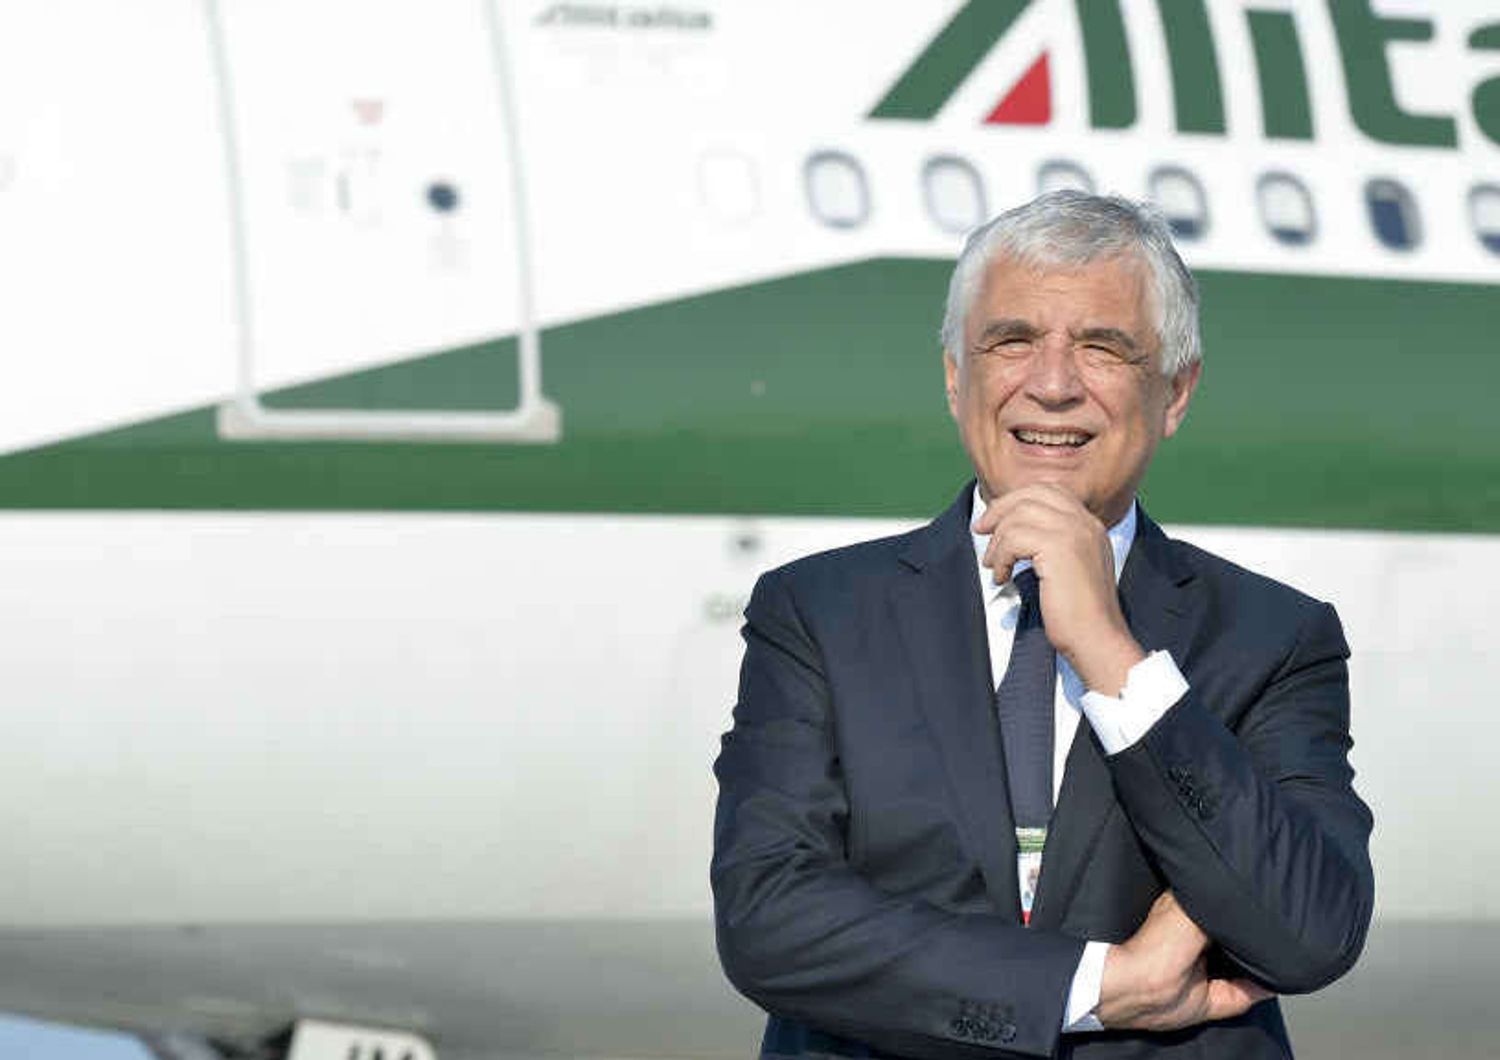 Alitalia: Del Torchio, firma con Etihad non prevista per domani